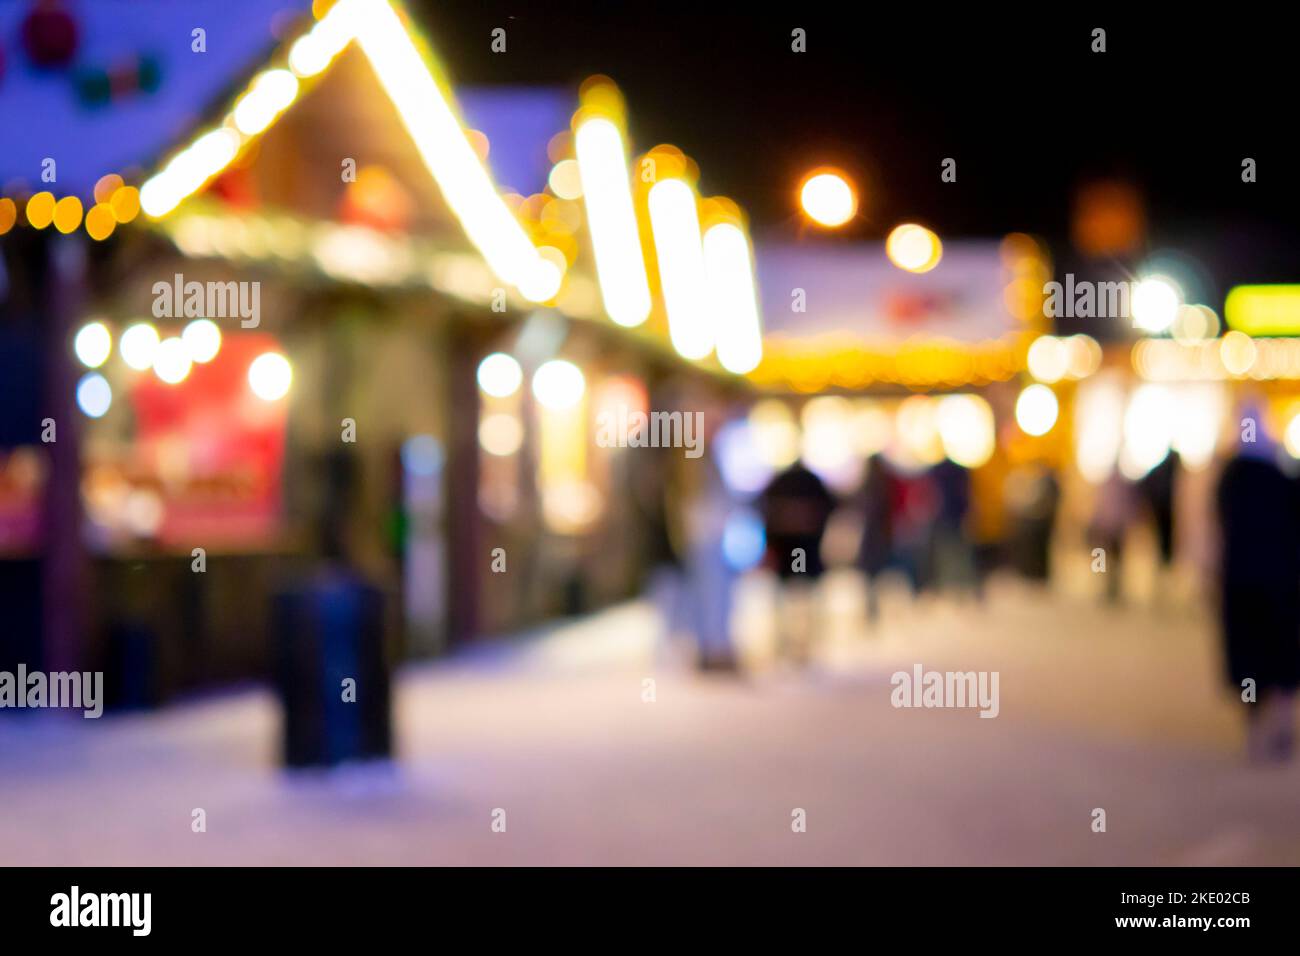 Sfondo sfocato. La gente cammina nella piazza della città la sera d'inverno. Silhouette nere di persone che camminano vicino a case decorate illuminazione luminosa. Luce bianca bokeh sfocare i punti dalle luci della casa incandescente Foto Stock